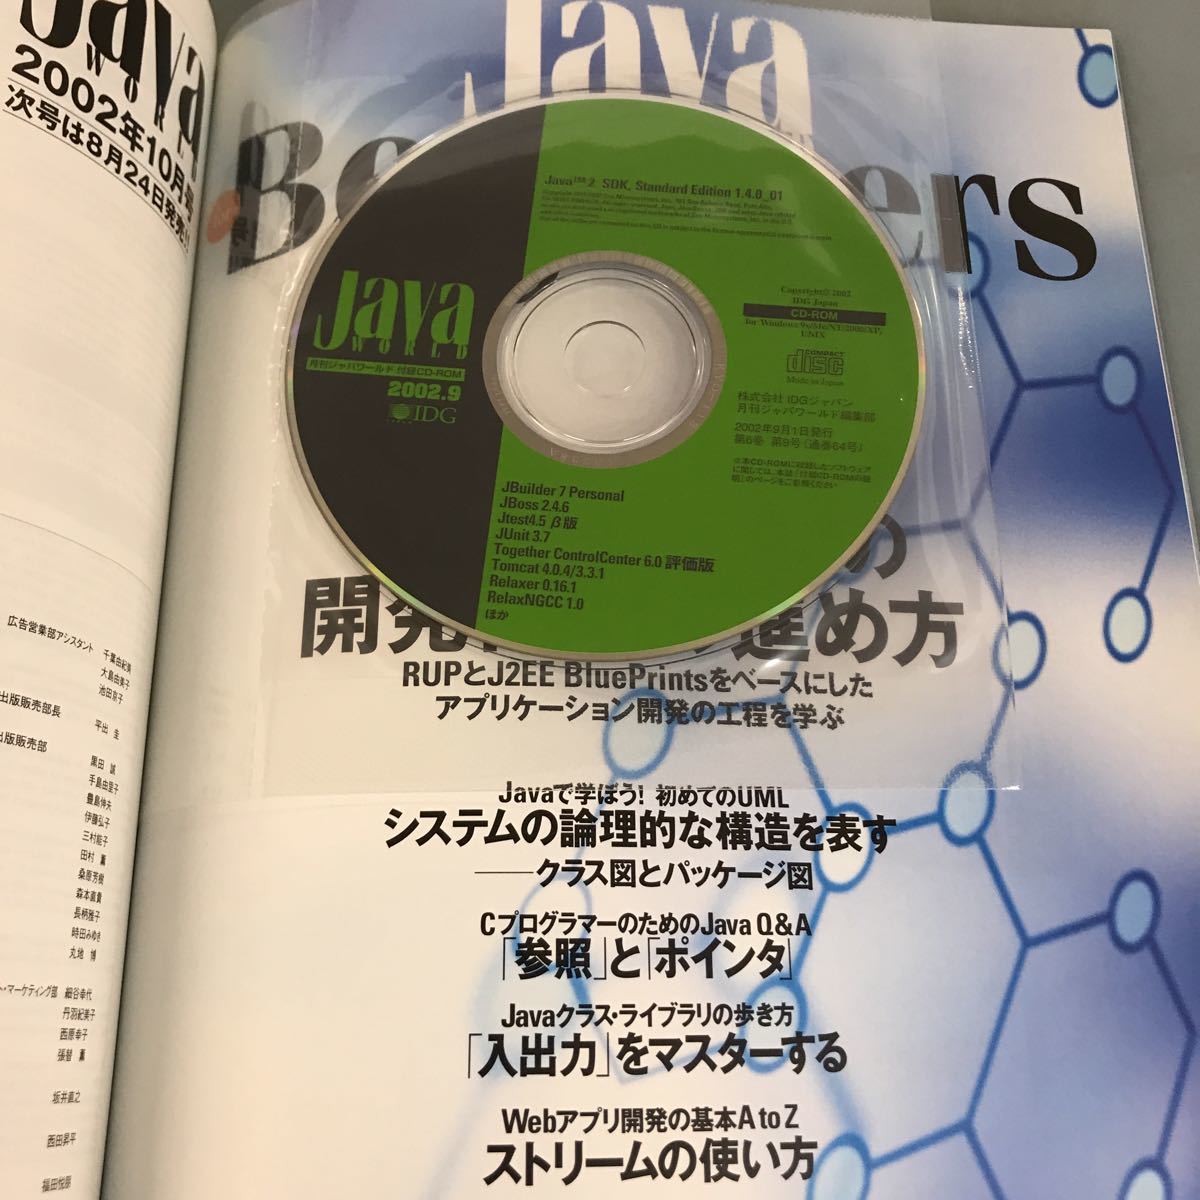 A07-021 [ месяц ...]... мир  2002 9 [ дополнение  CD-ROM]Java2  записывание ！  специальное издание  Web услуги /JMS/J2EE развитие   pro ... IDG Япония 